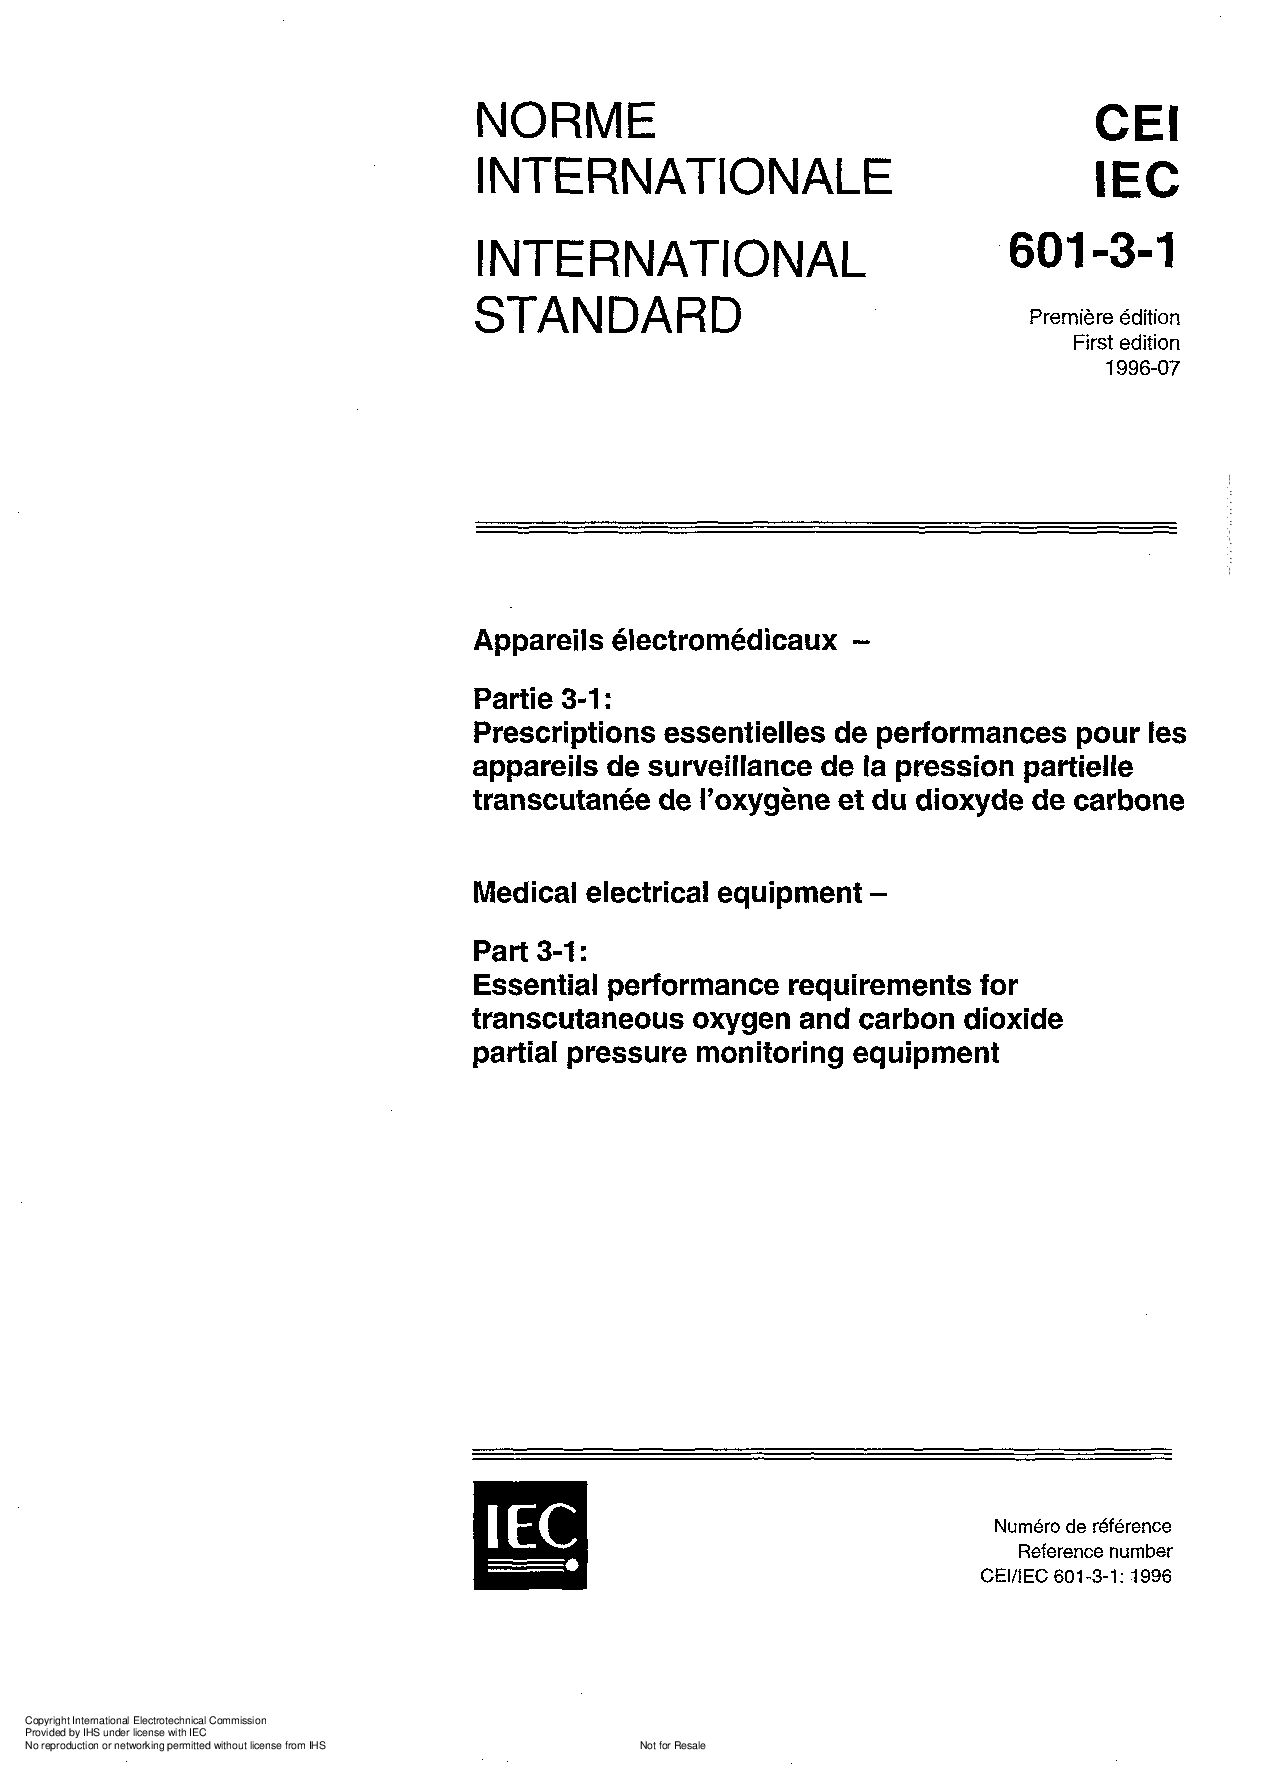 IEC 60601-3-1-1996